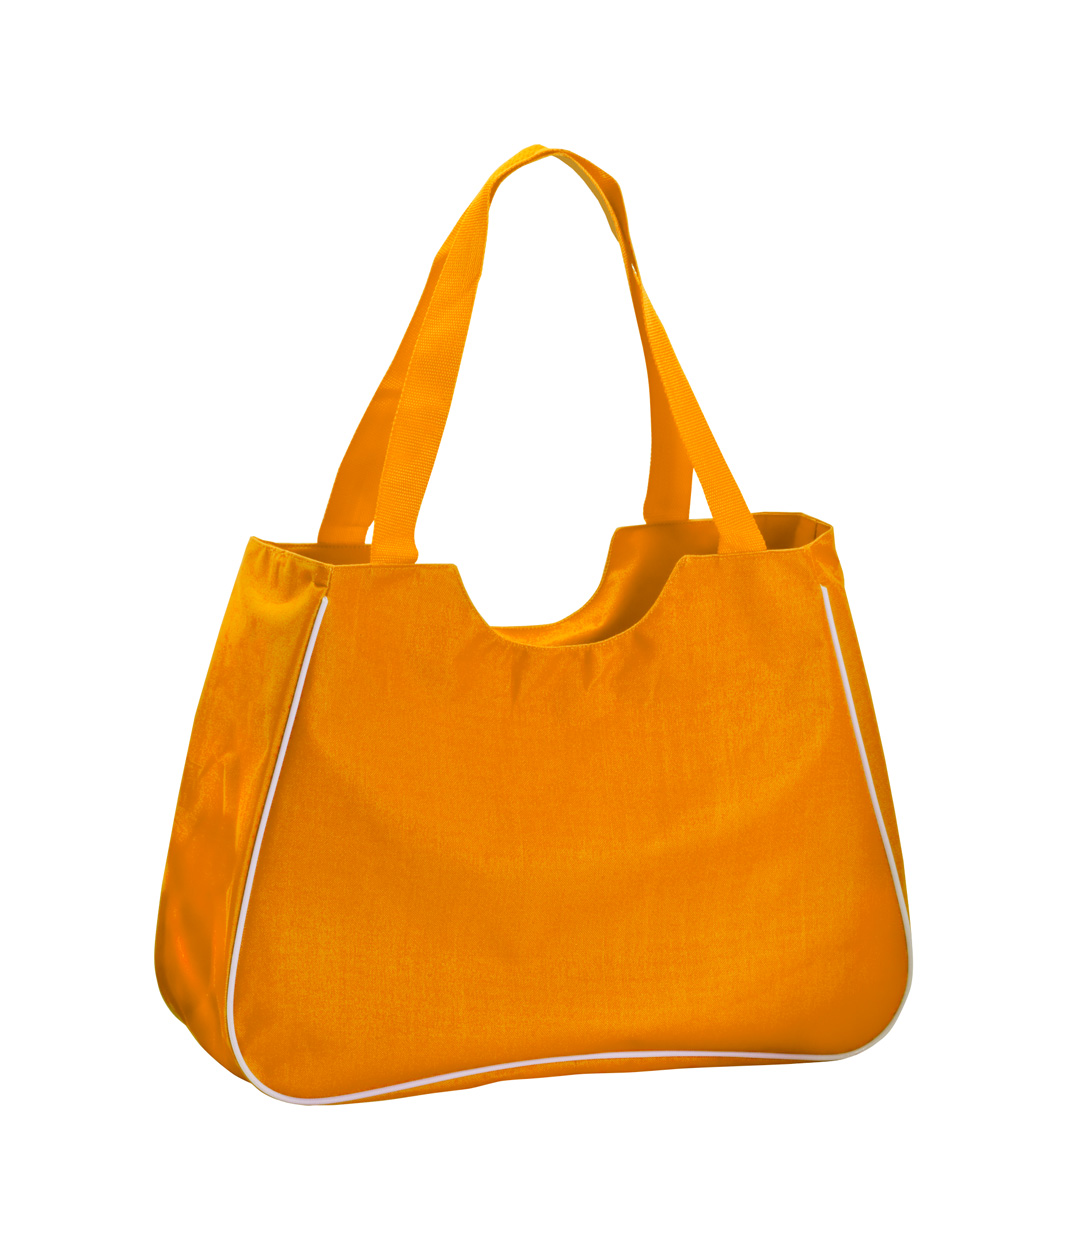 Maxi torba za plažu, narančaste boje s logom 